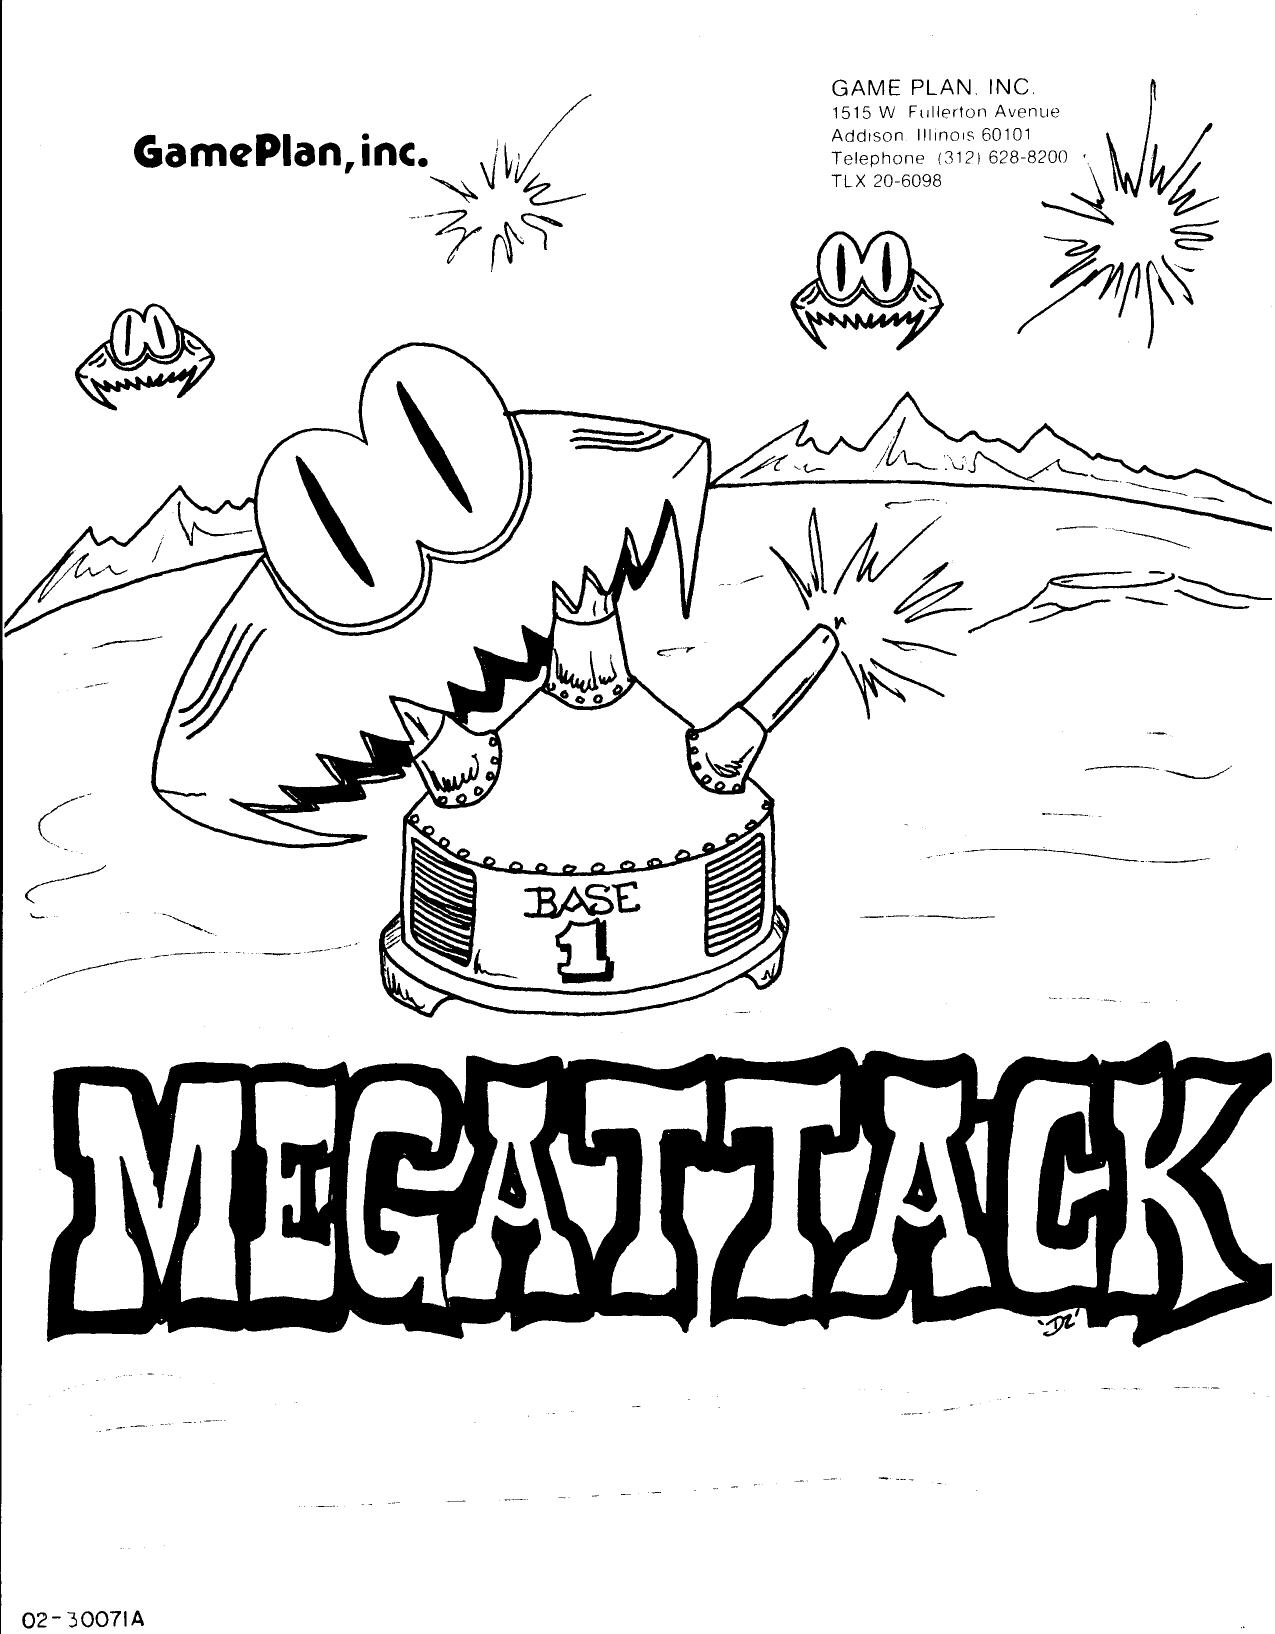 Megattack (U)